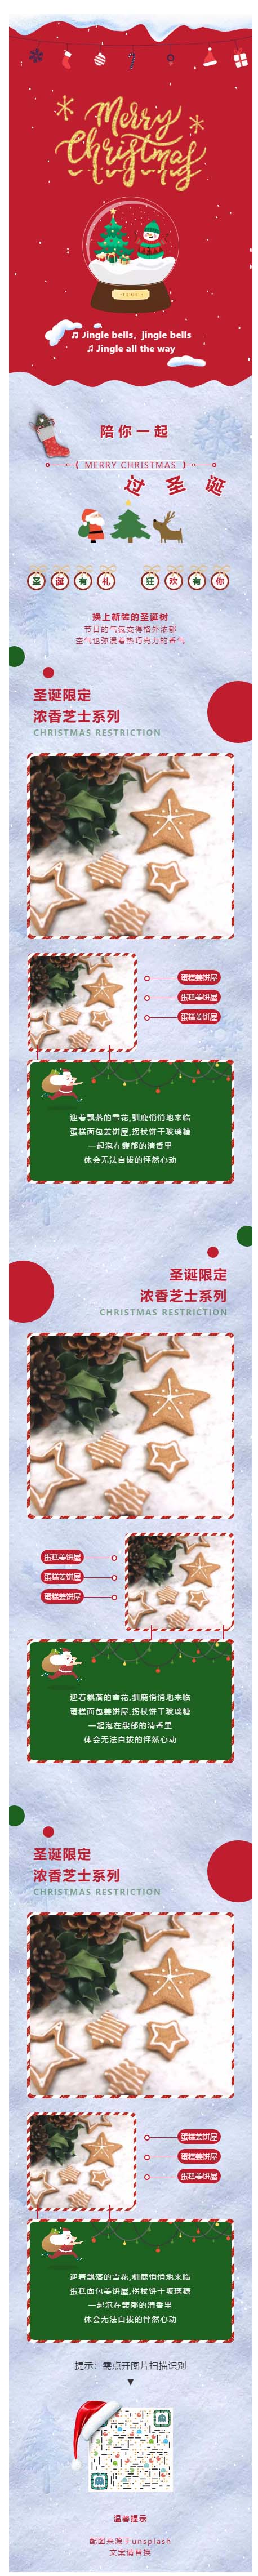 圣诞节绿色红色飘雪动态背景微信公众号推送图文模板公众号优秀推文素材